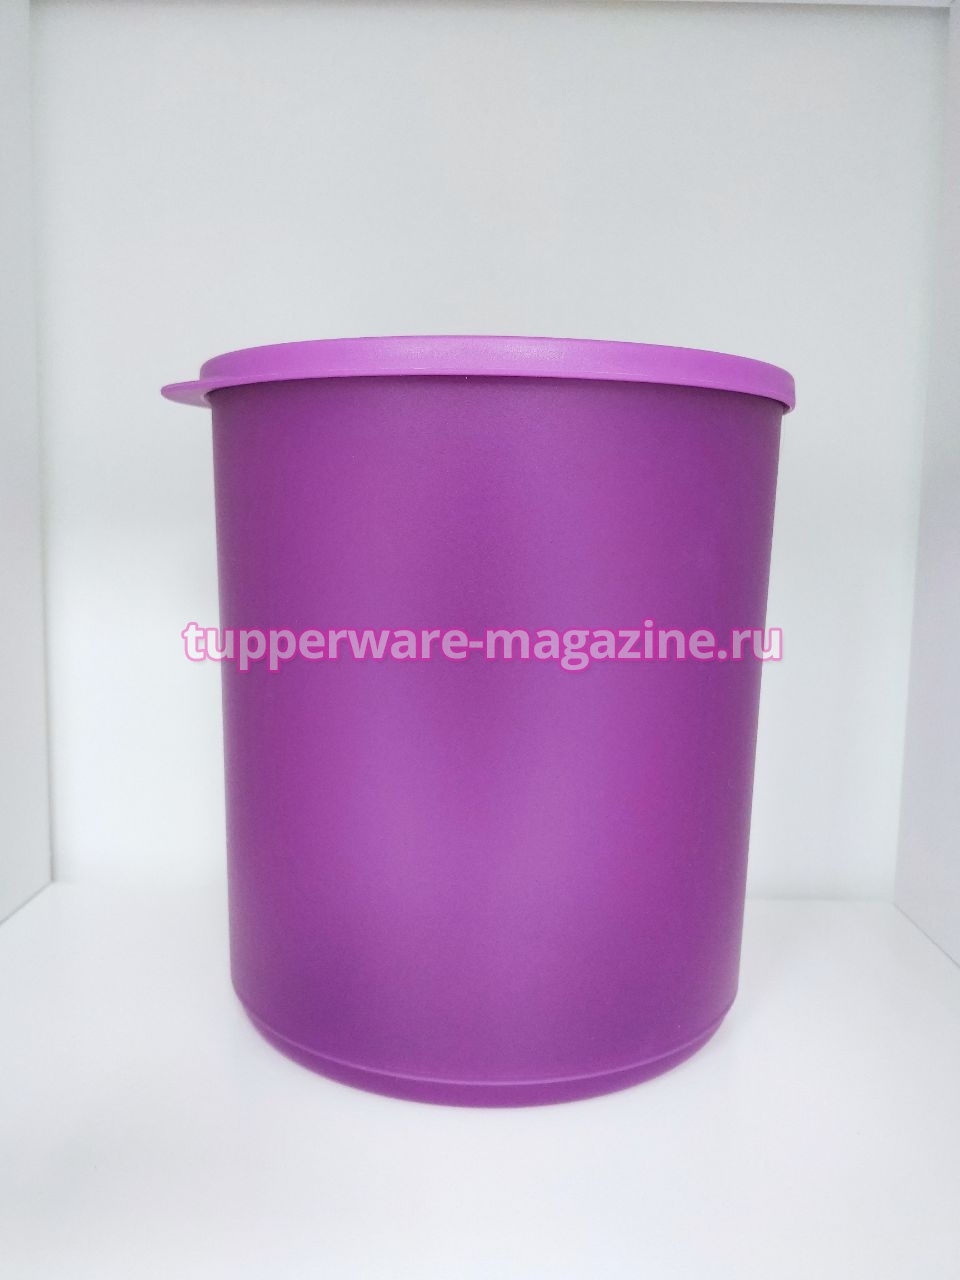 Контейнер "Цилиндрикс" 3,3 л в фиолетовом цвете